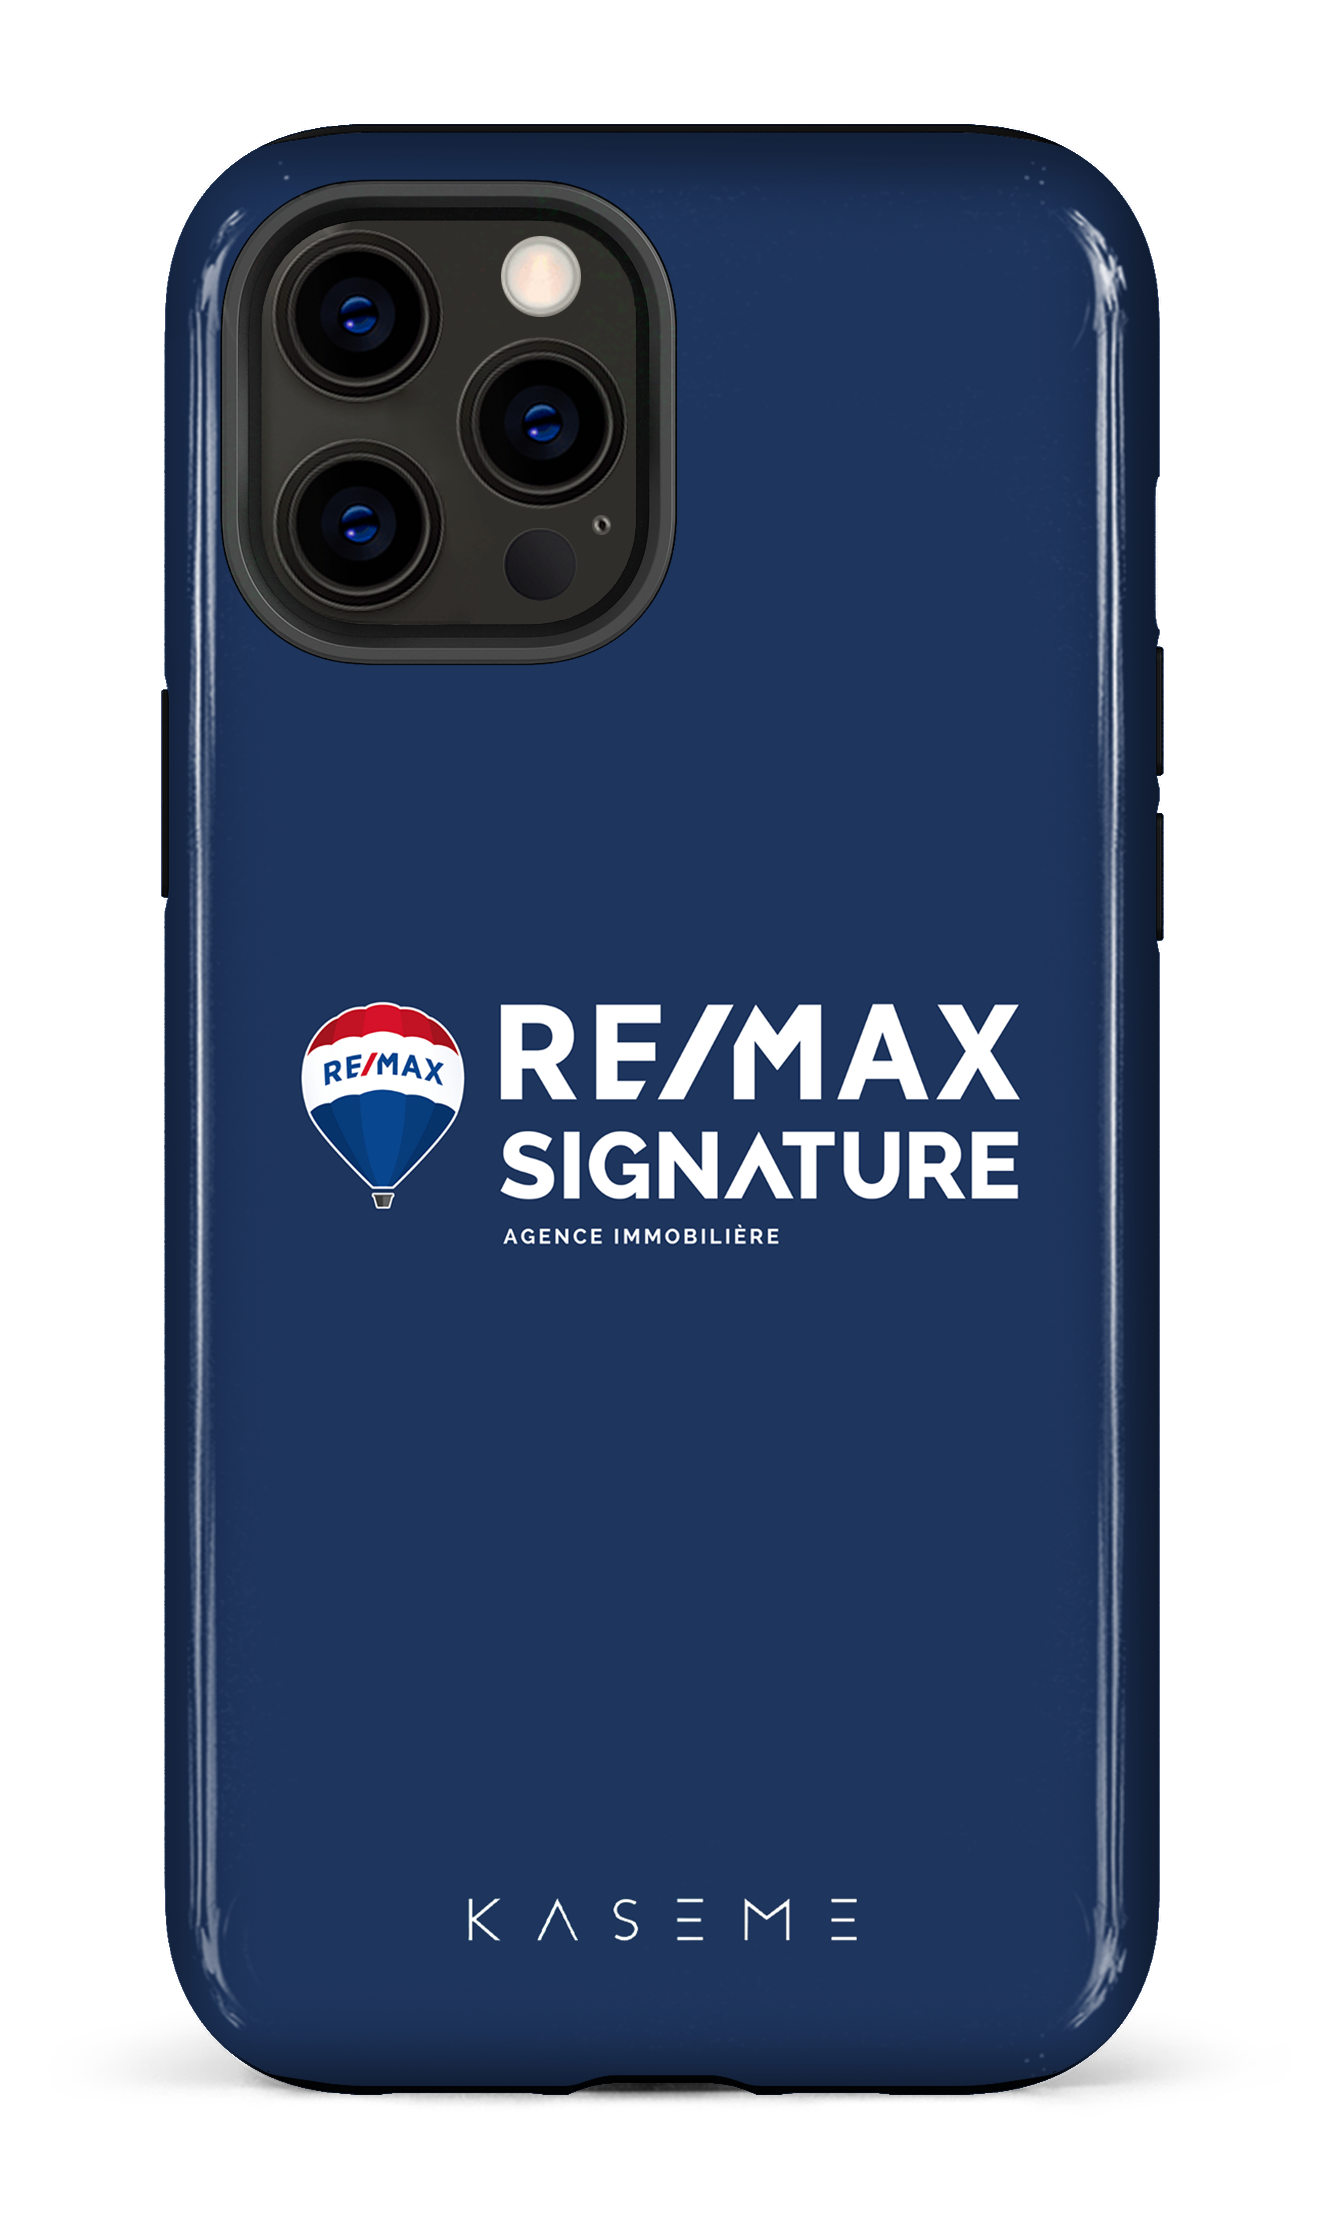 Remax Signature Bleu - iPhone 12 Pro Max